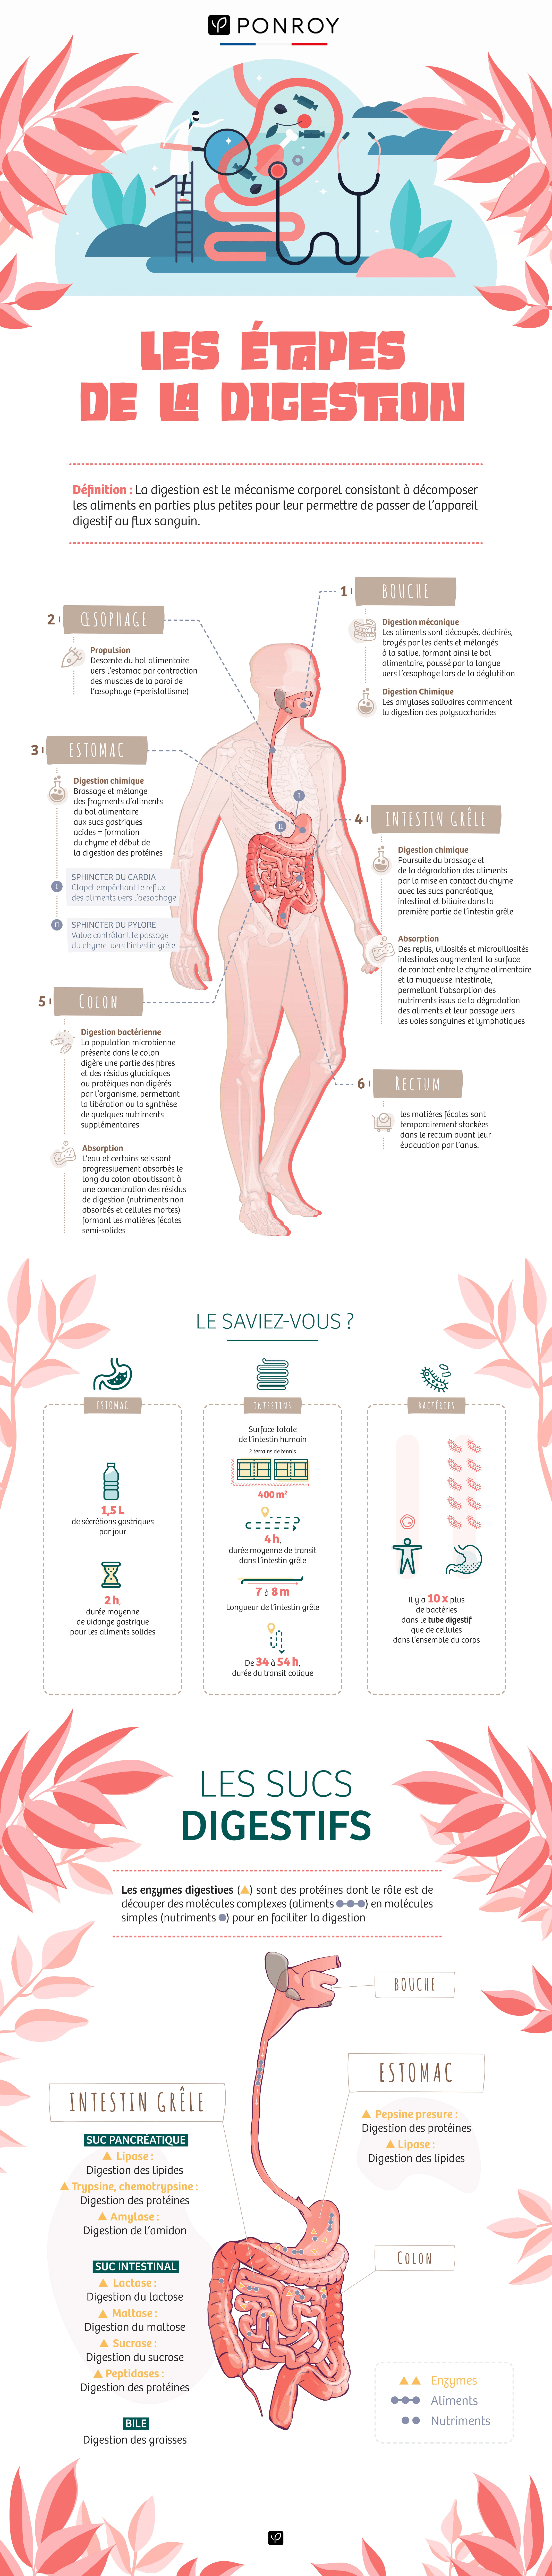 Infographie - Les étapes de la digestion - Ponroy